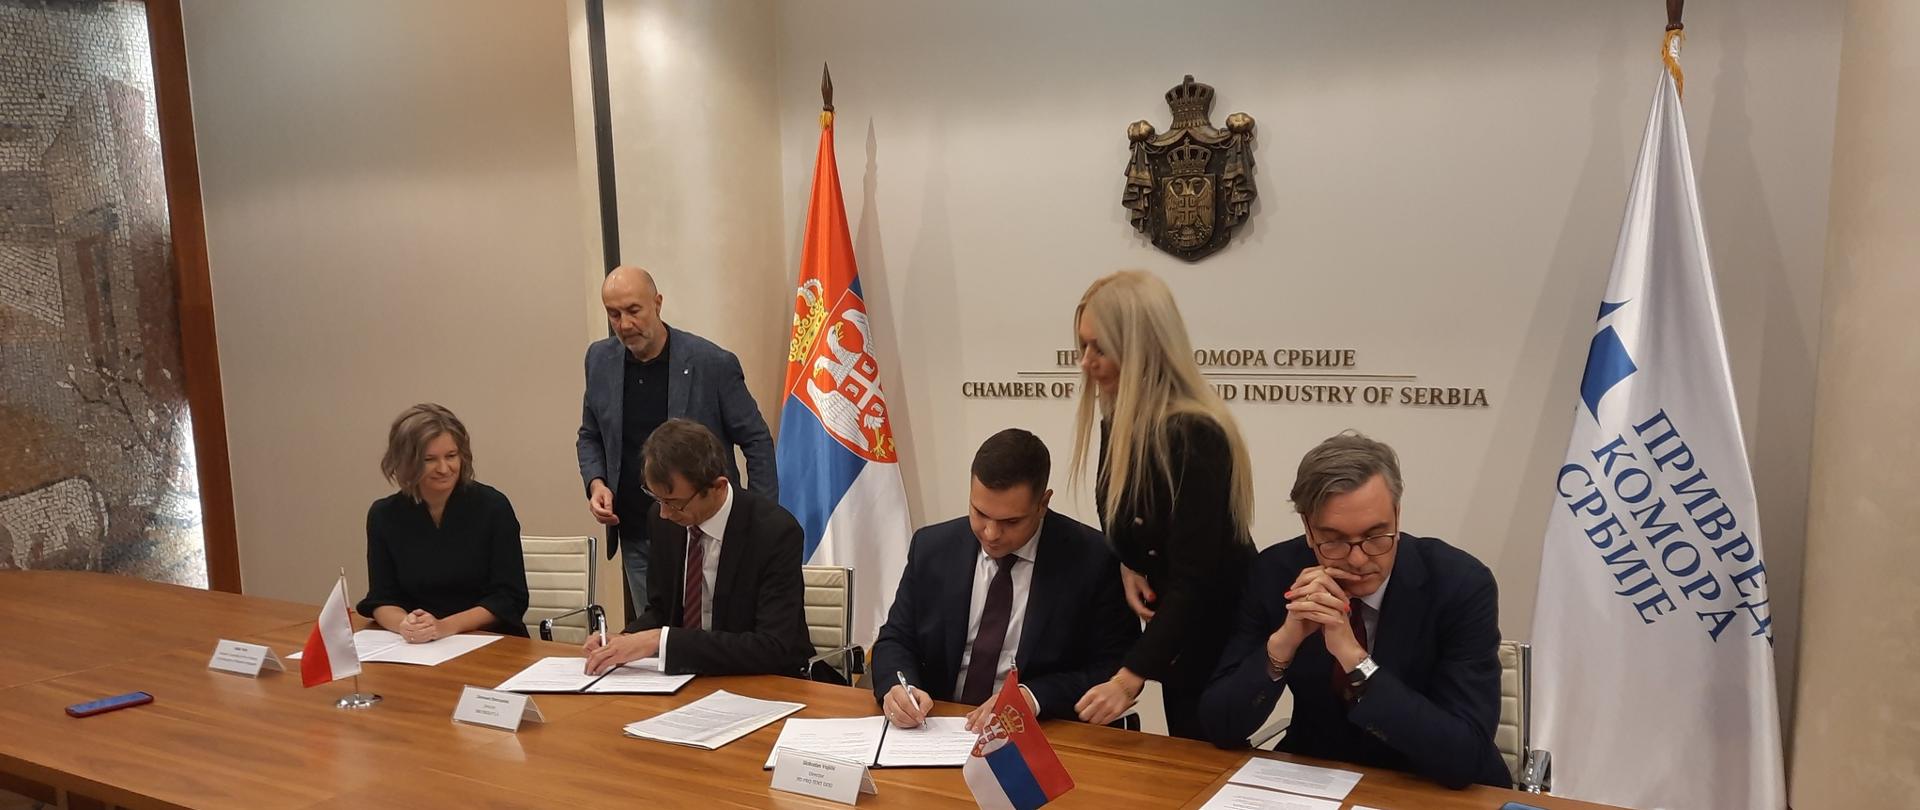 W dniu 20.12. br. w obecności prezesa serbskiej Izby Gospodarczej Marka Čadeža i chargé d’affaires
A. Perl odbyła się ceremonia podpisania umowy o strategicznym partnerstwie pomiędzy polską firmą SBB Energy, a serbską Pro TENT.
